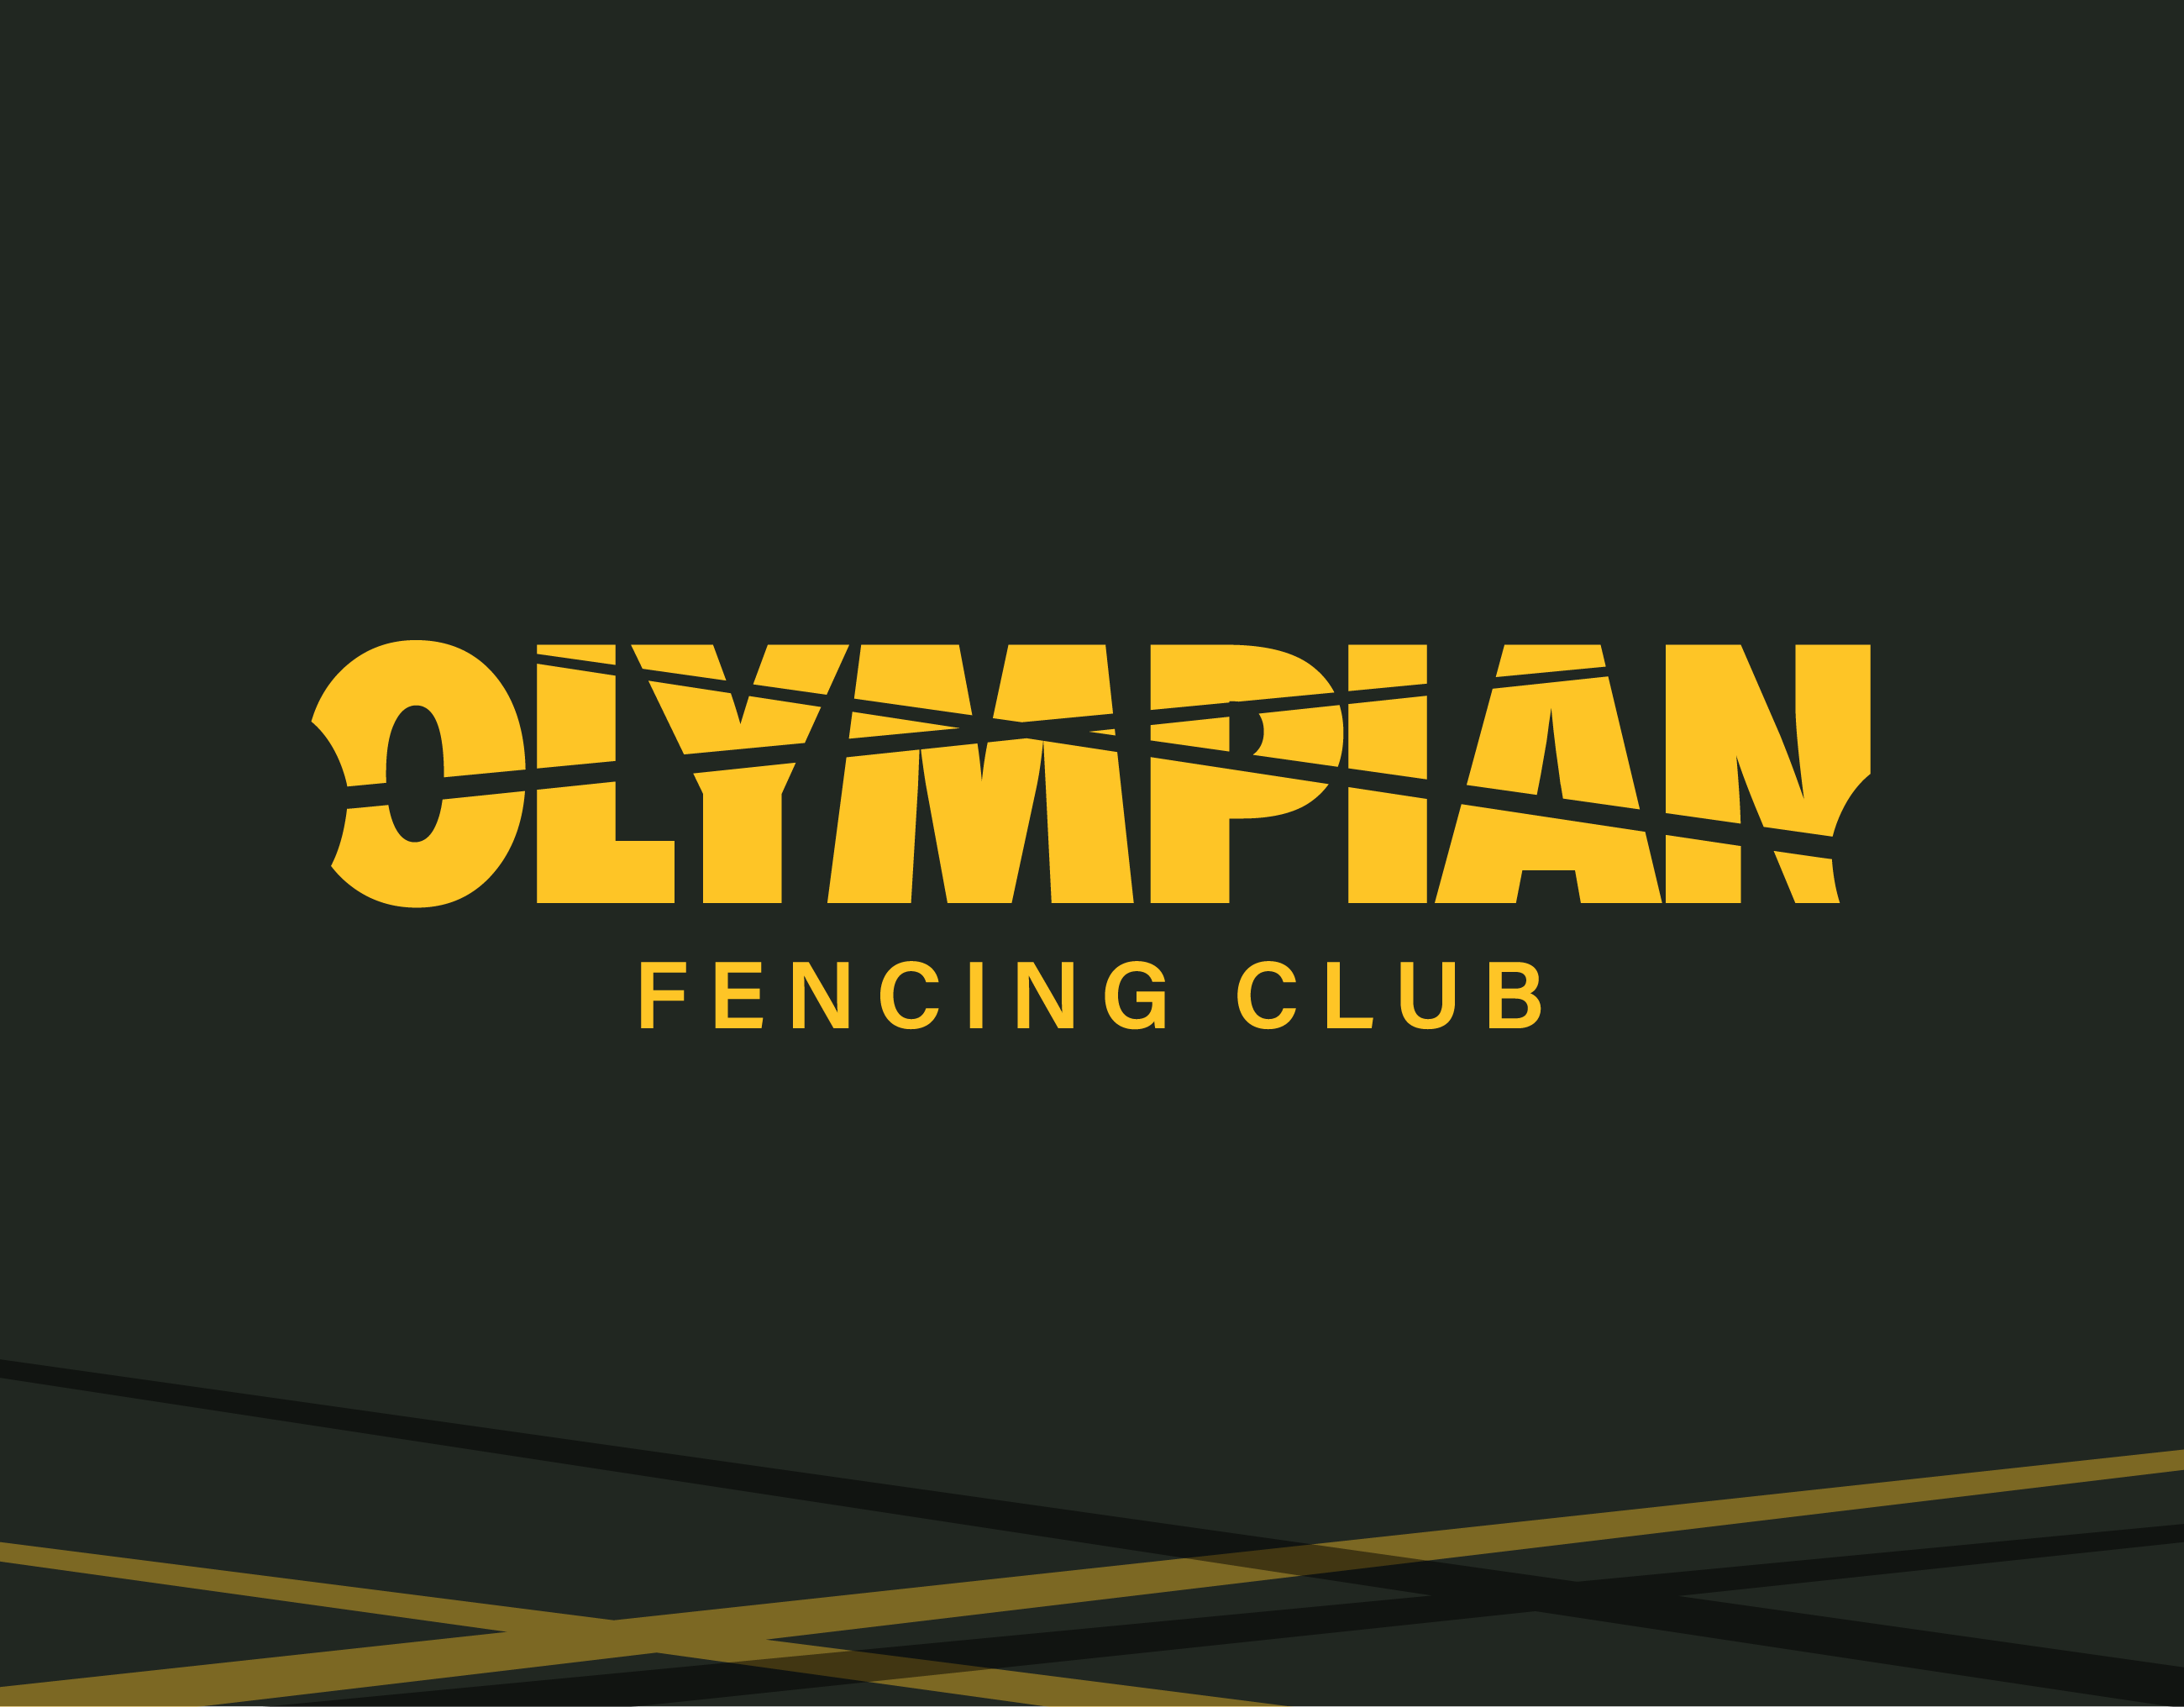 Public Alliance client, Olympian Fencing Club